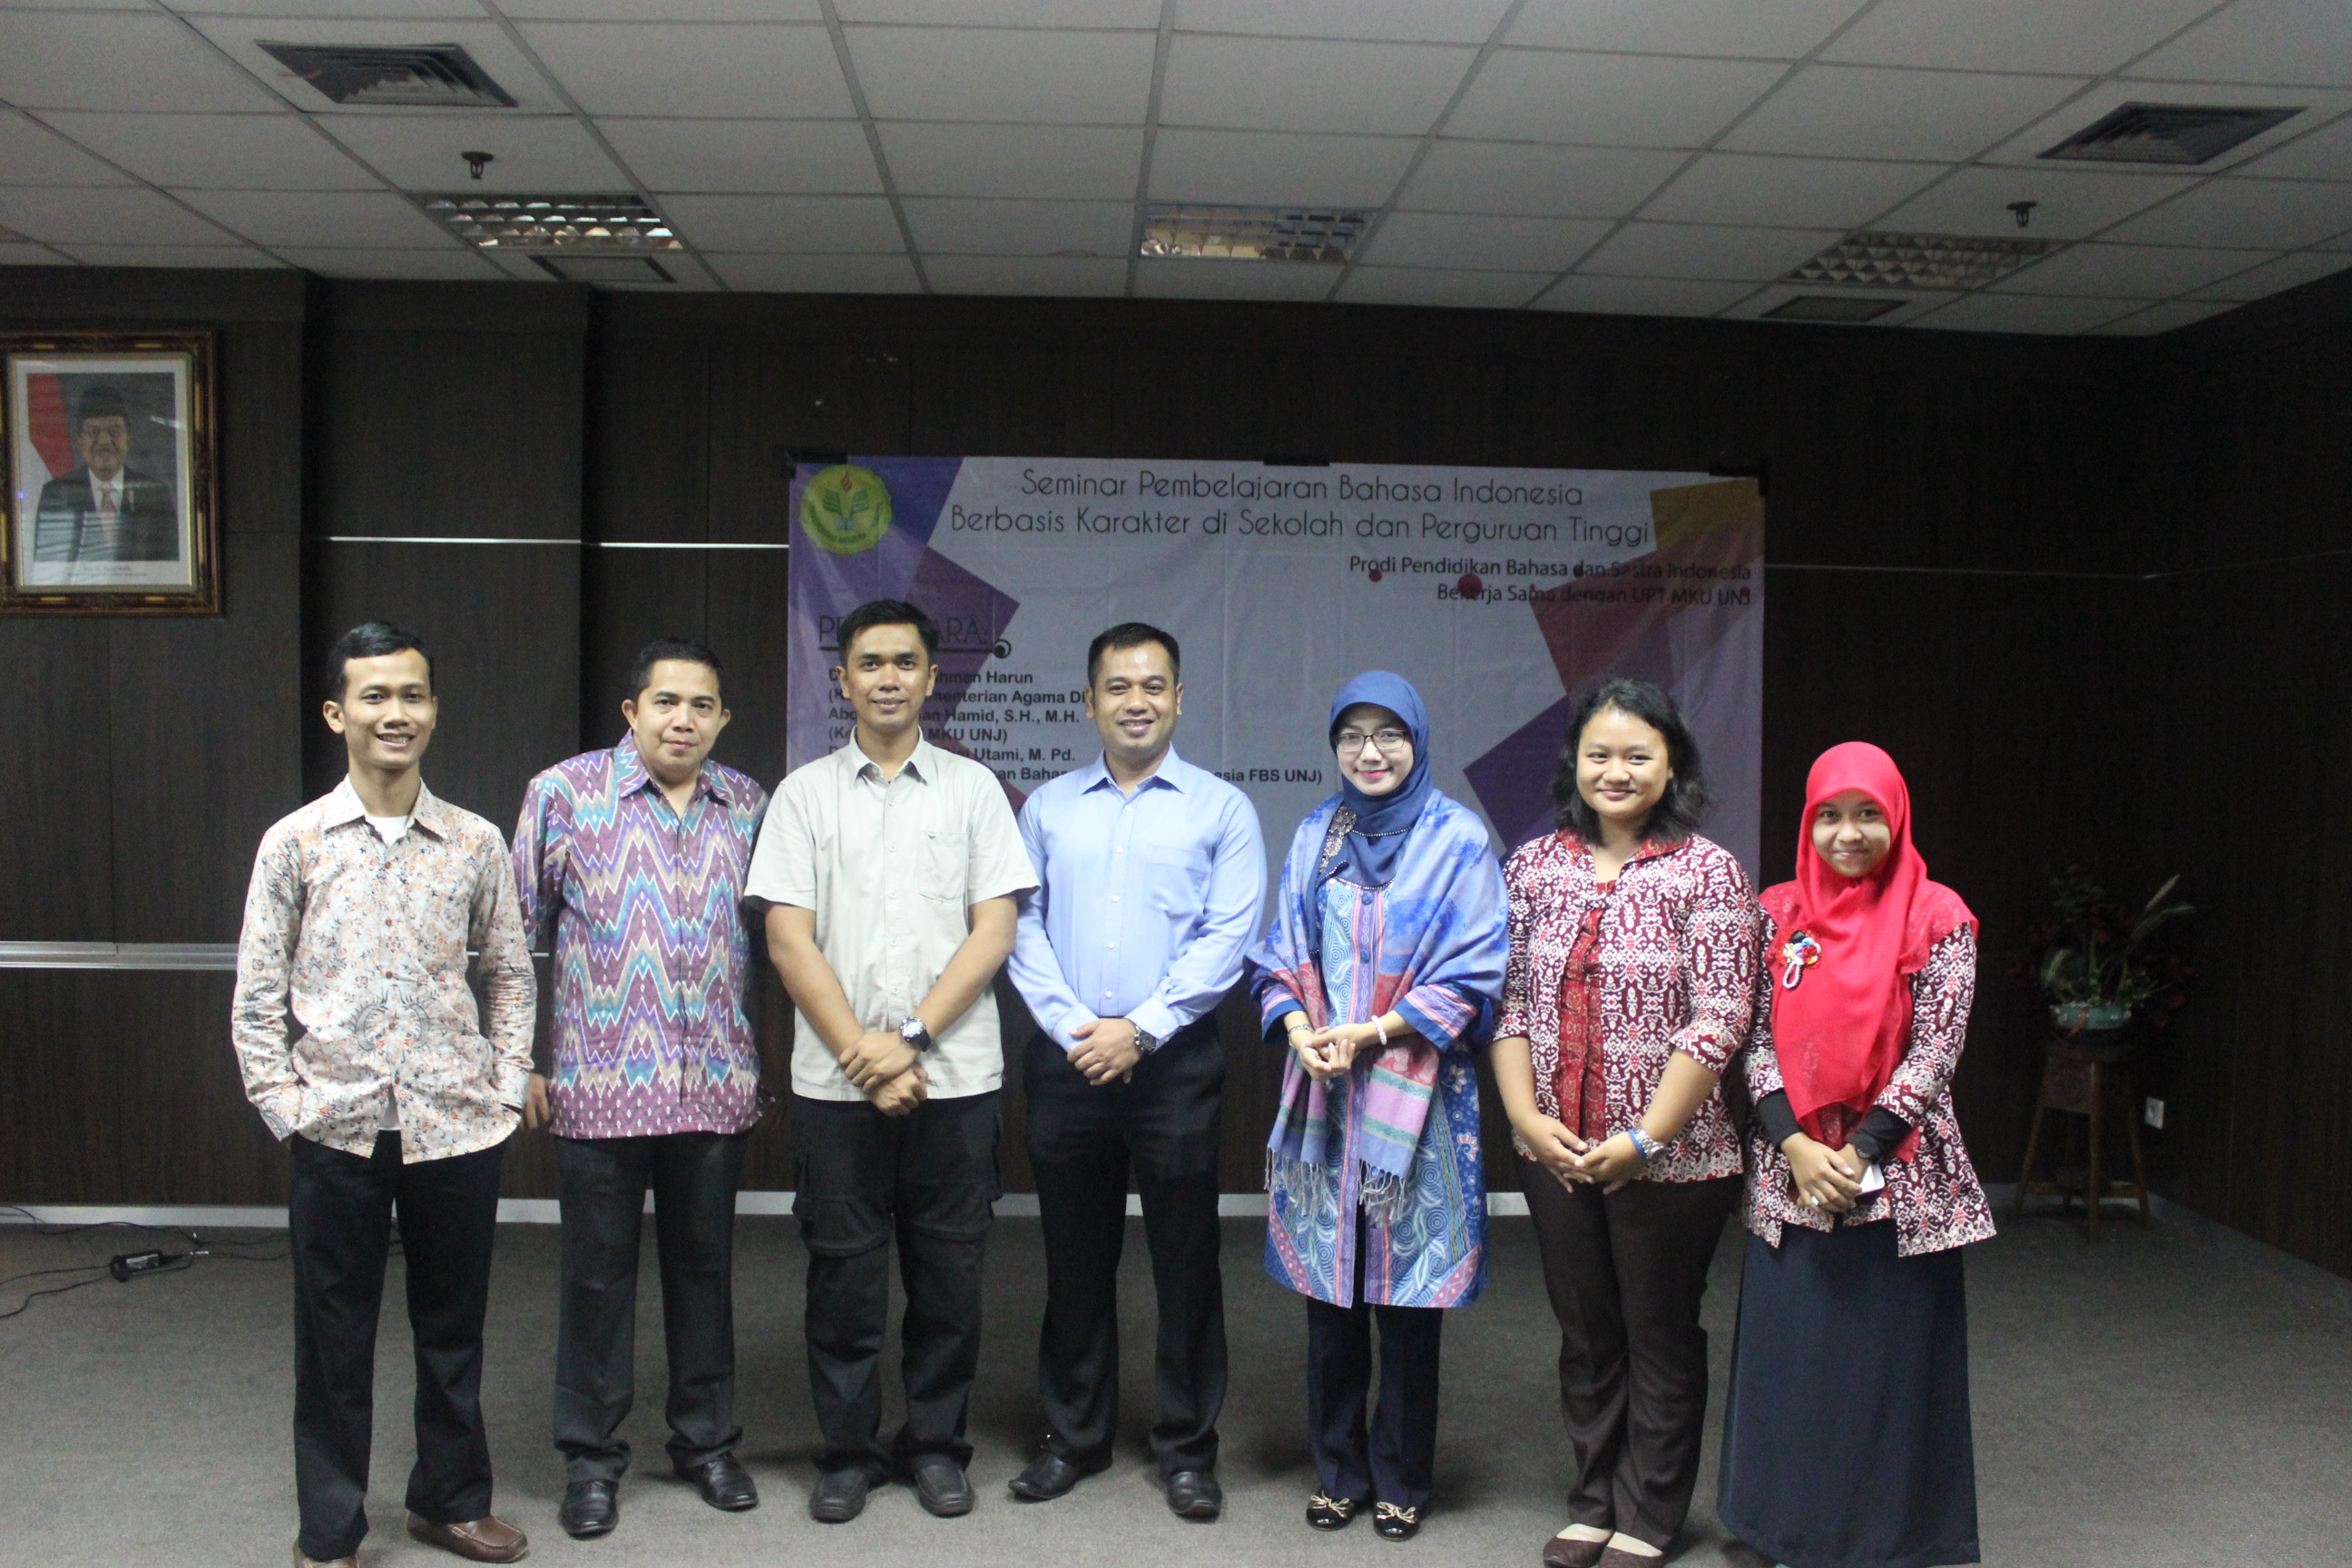 Seminar Pembelajaran Bahasa Indonesia Berbasis Karakter dalam Rangkaian Dies Natalis ke-52 UNJ